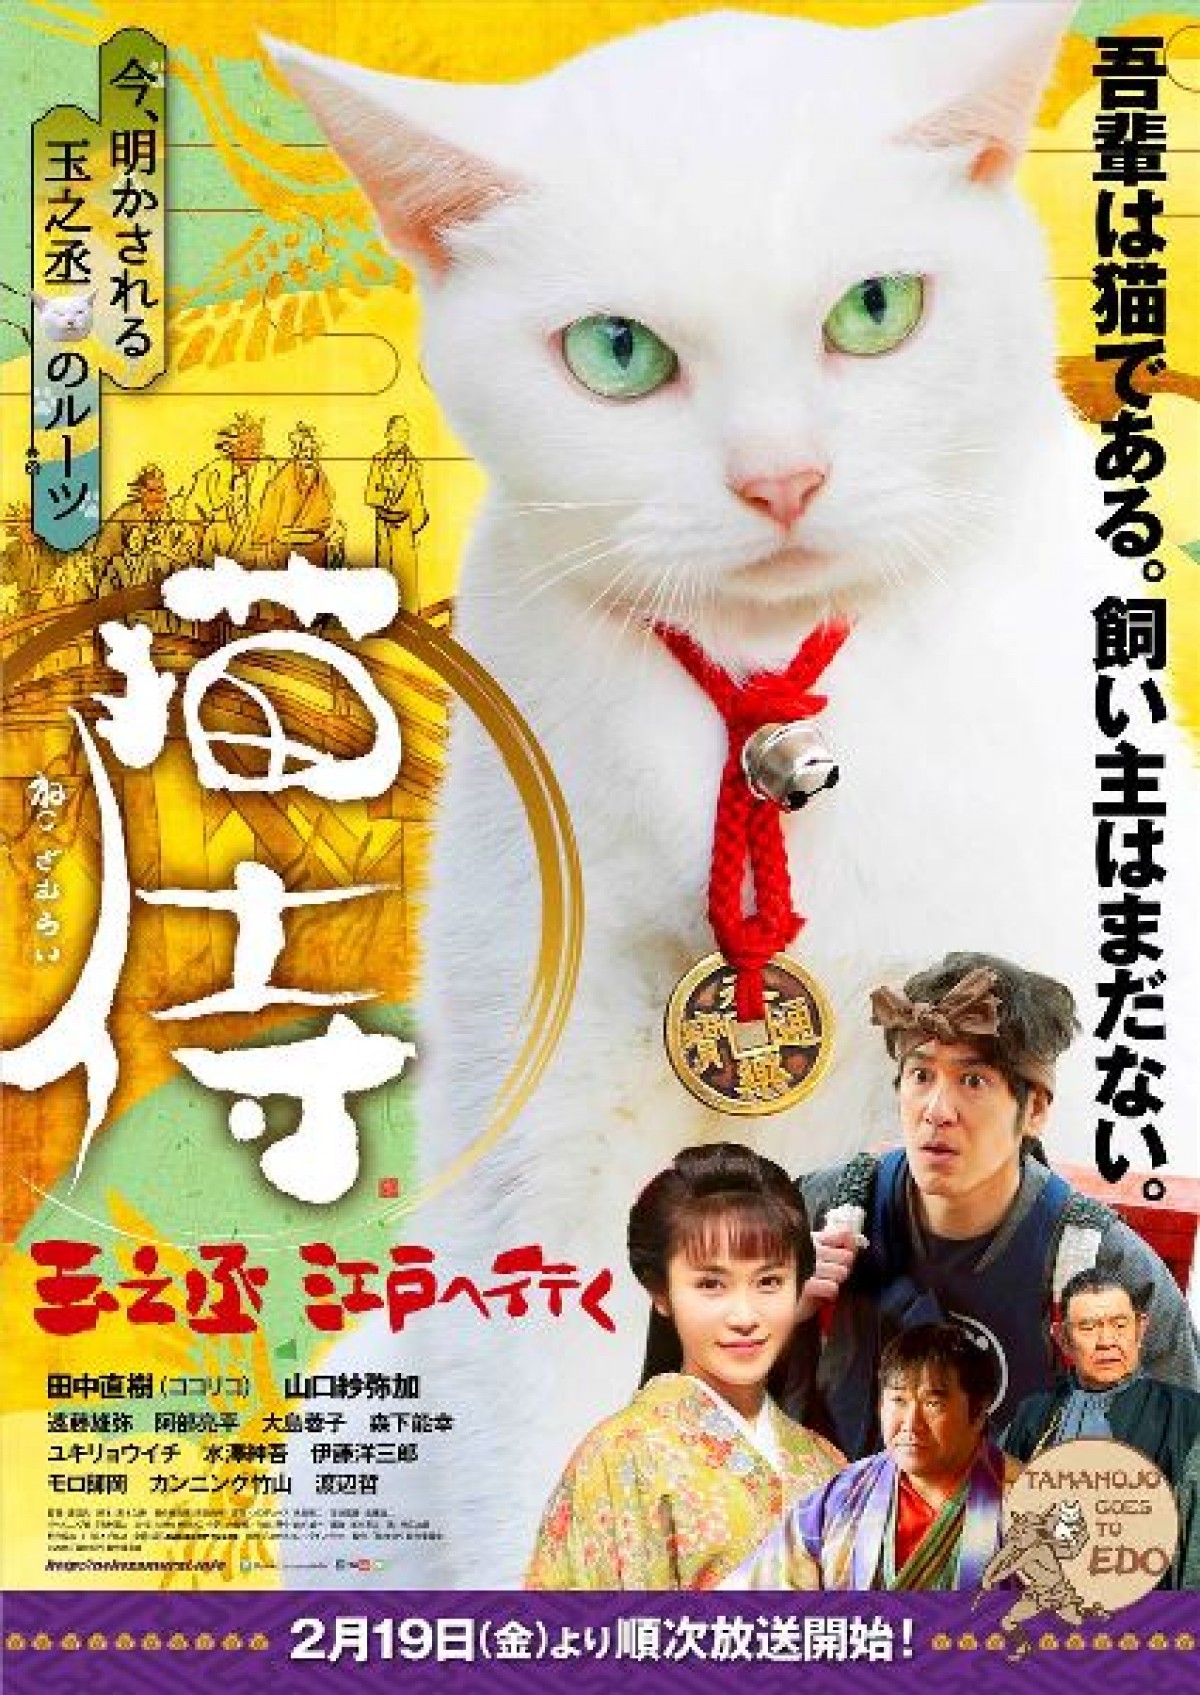 Samurai Cat: Tamanojo Goes to Edo (2016) Screenshot 1